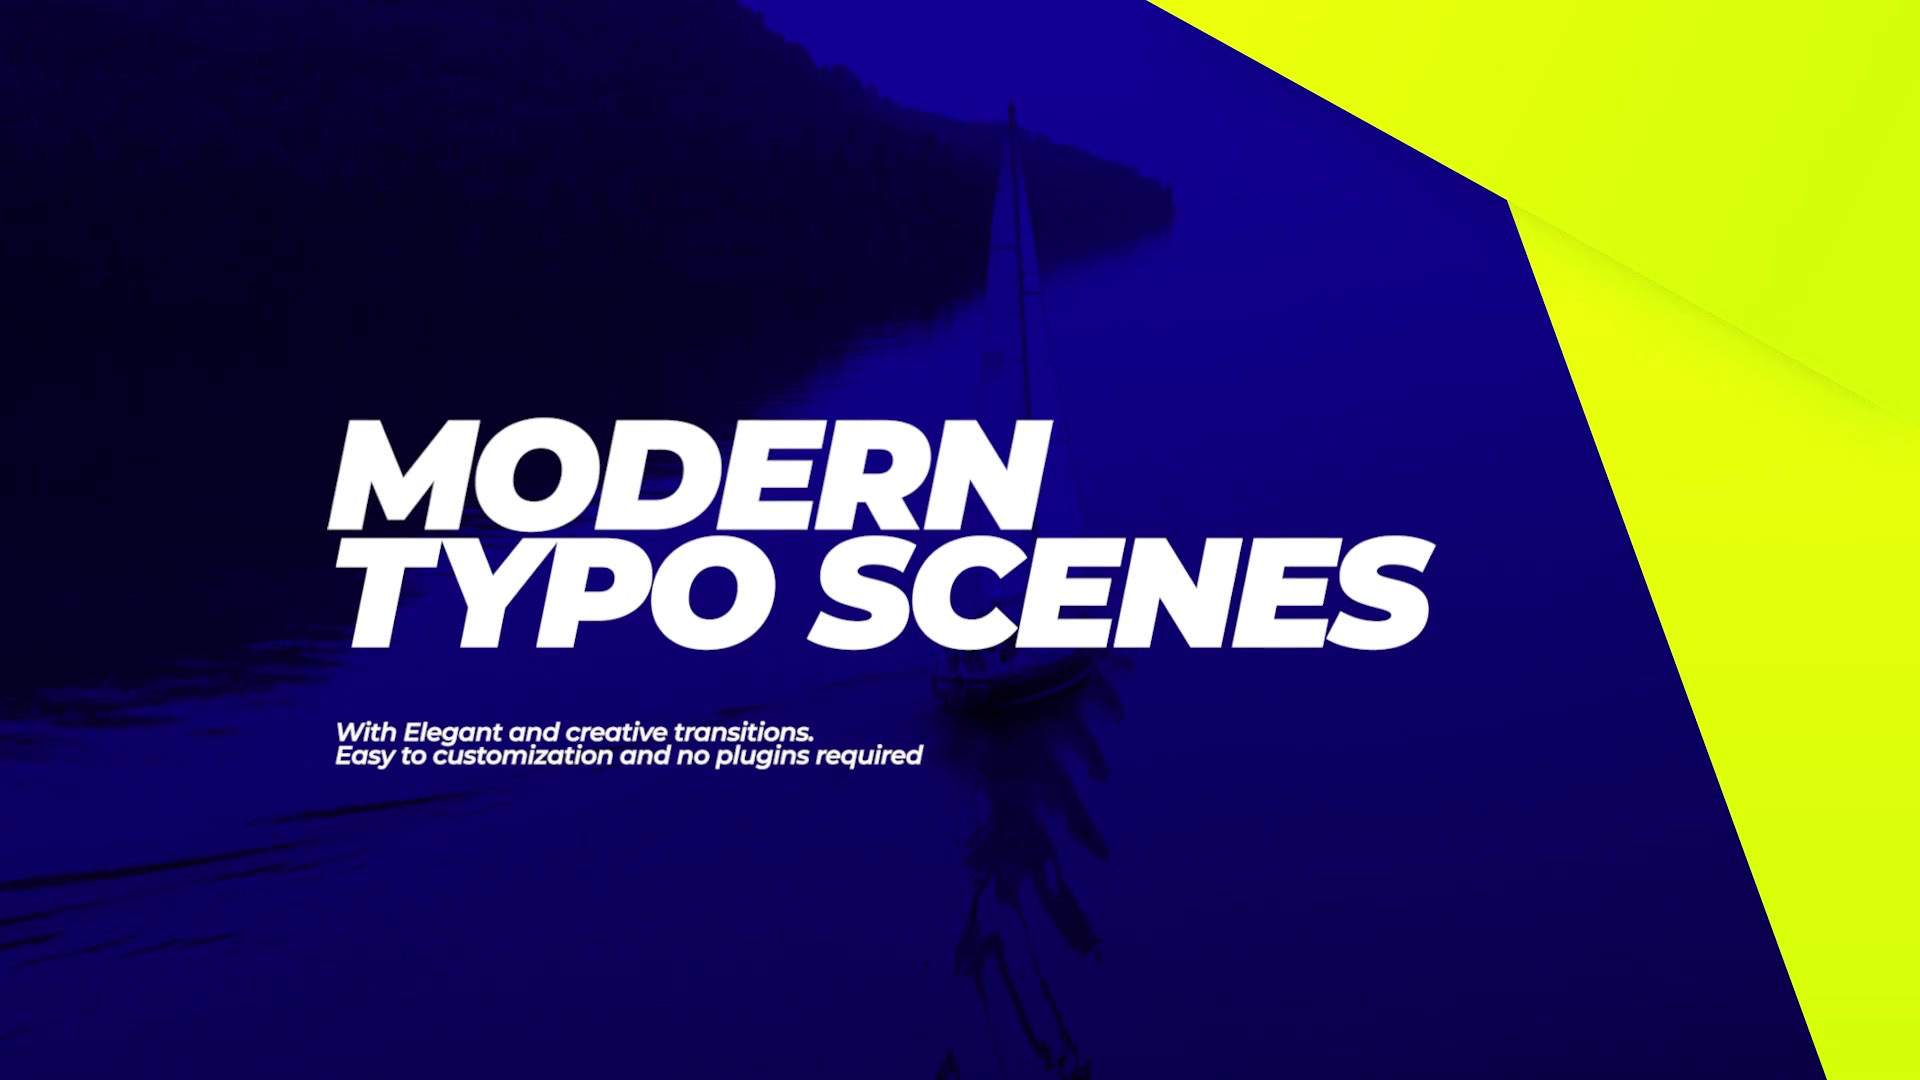 Modern Typo Scenes Videohive 34095296 Premiere Pro Image 2